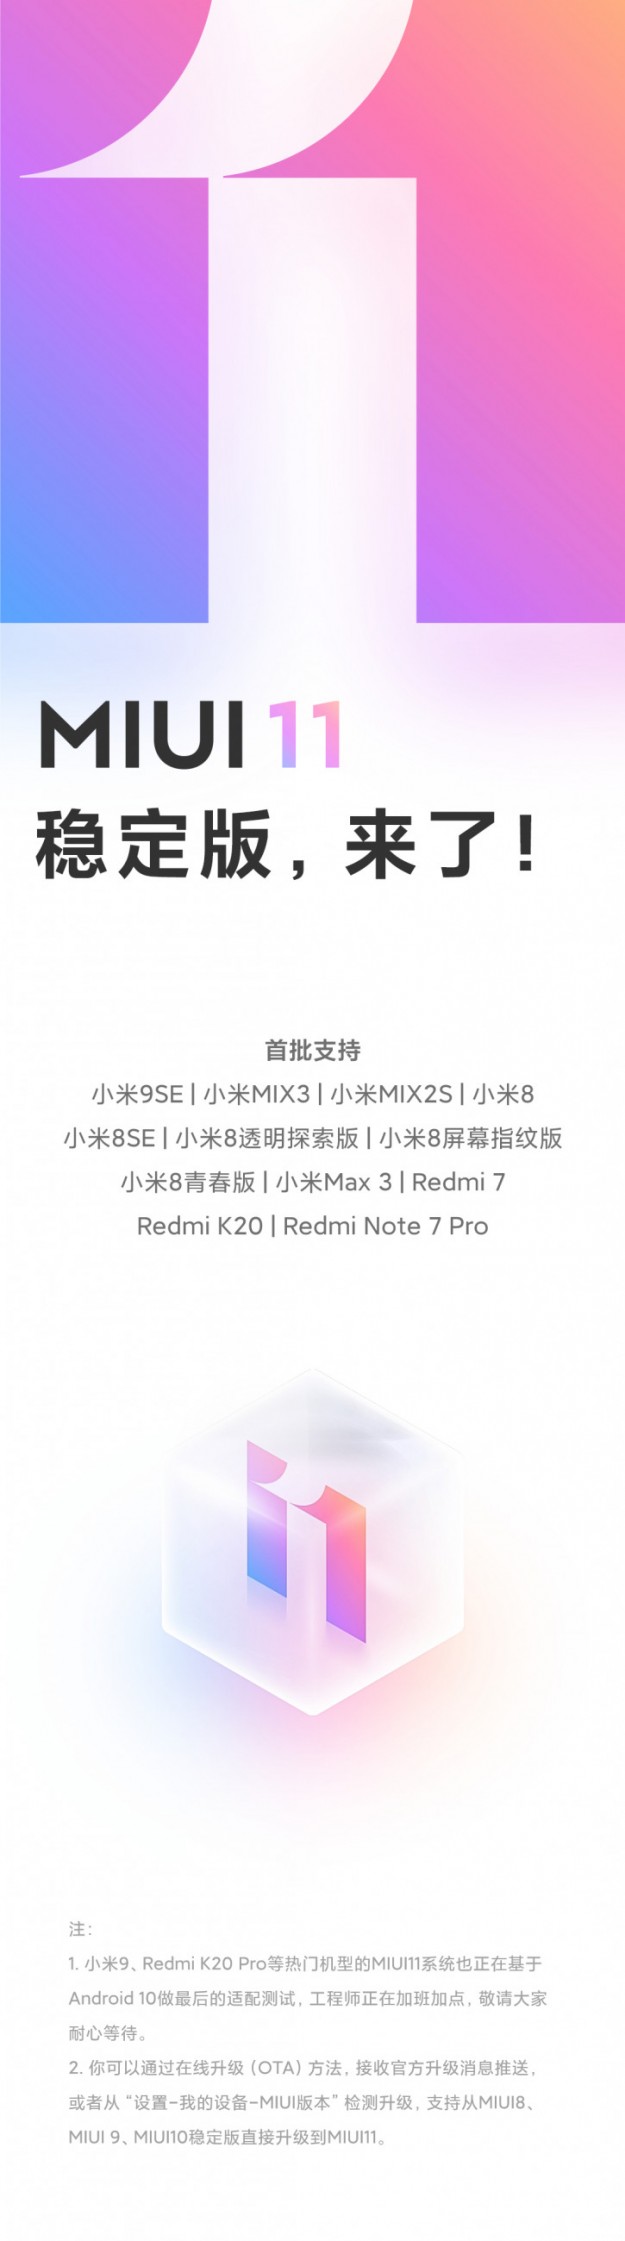 12 моделей Xiaomi и Redmi получили MIUI 11